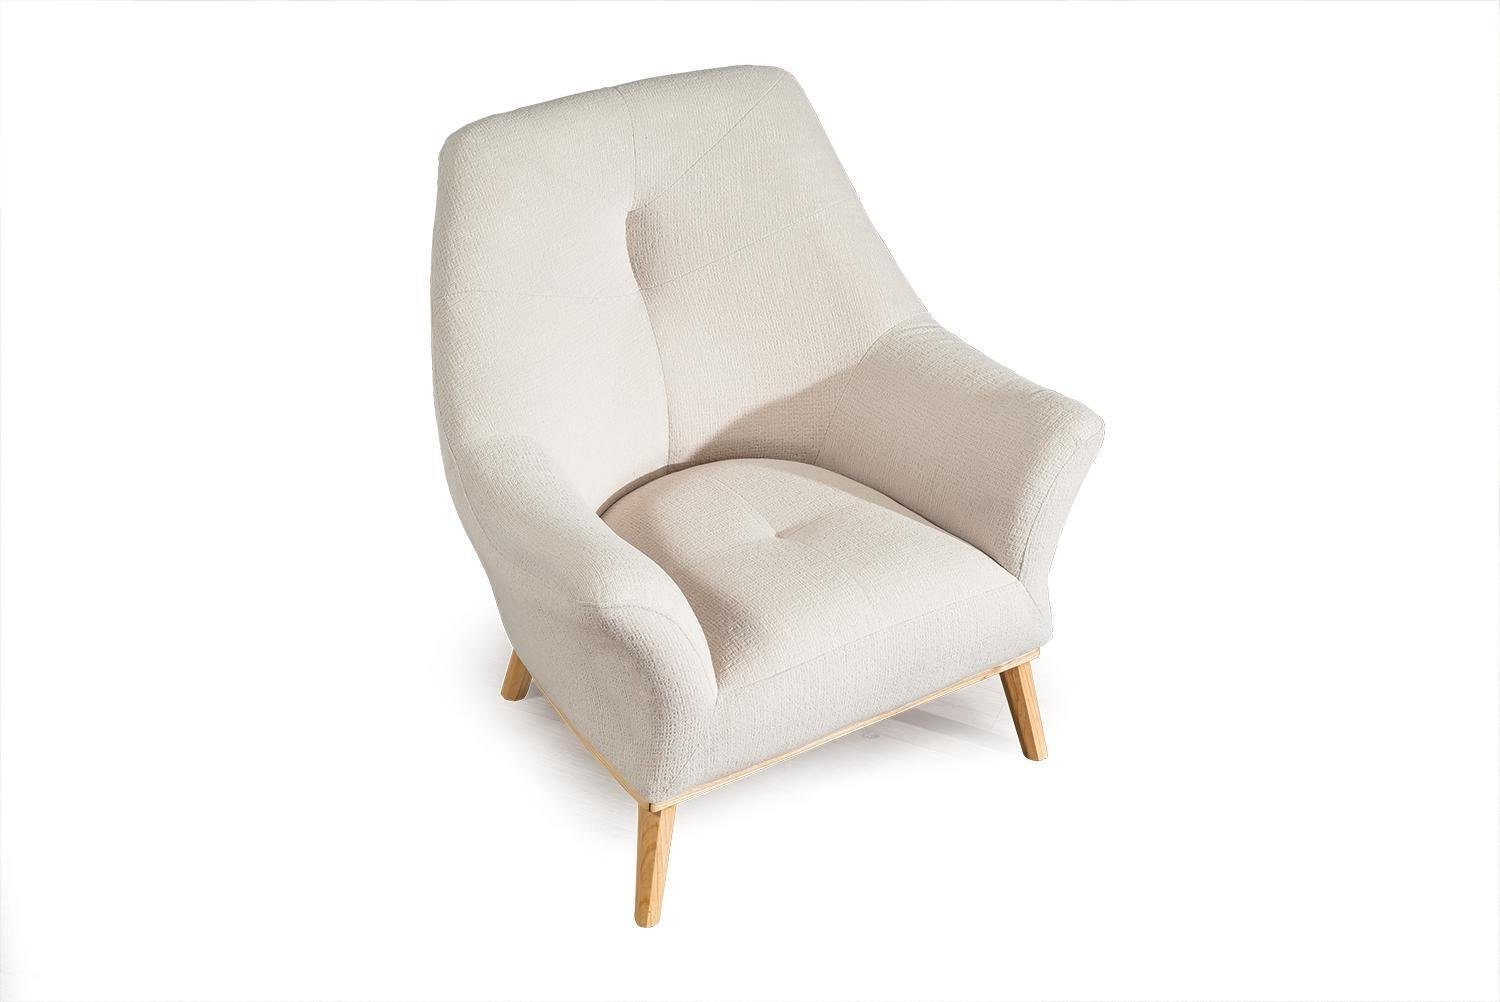 Textil Design Relax 1 weiß Wohnzimmer Club Sessel Möbel Luxus JVmoebel Sessel Sitzer